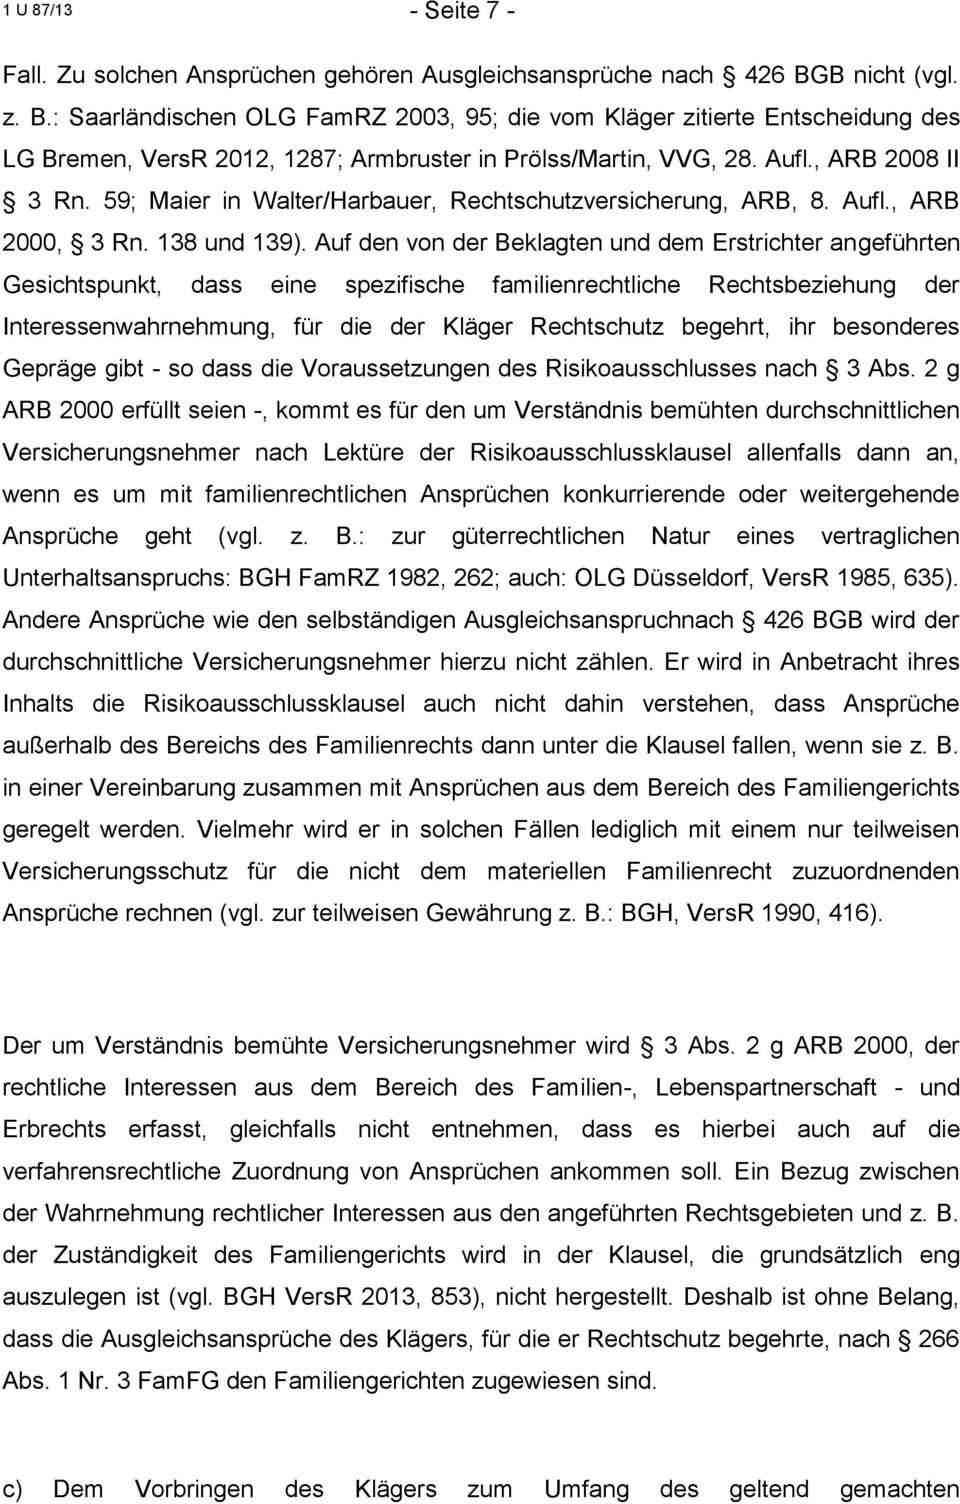 59; Maier in Walter/Harbauer, Rechtschutzversicherung, ARB, 8. Aufl., ARB 2000, 3 Rn. 138 und 139).